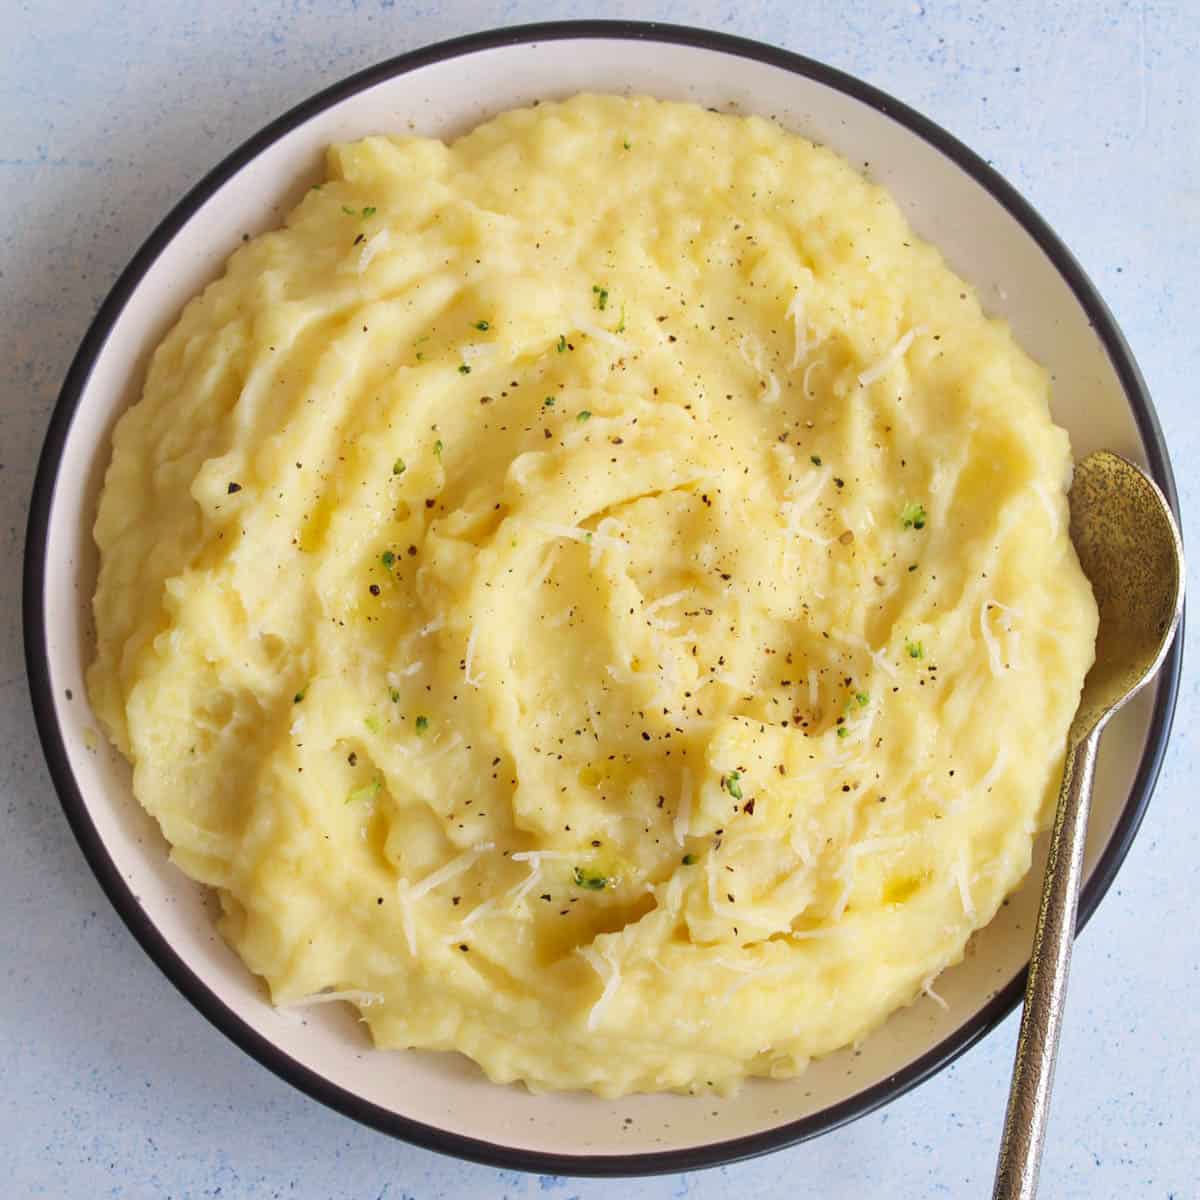 Gluten-free mashed potatoes